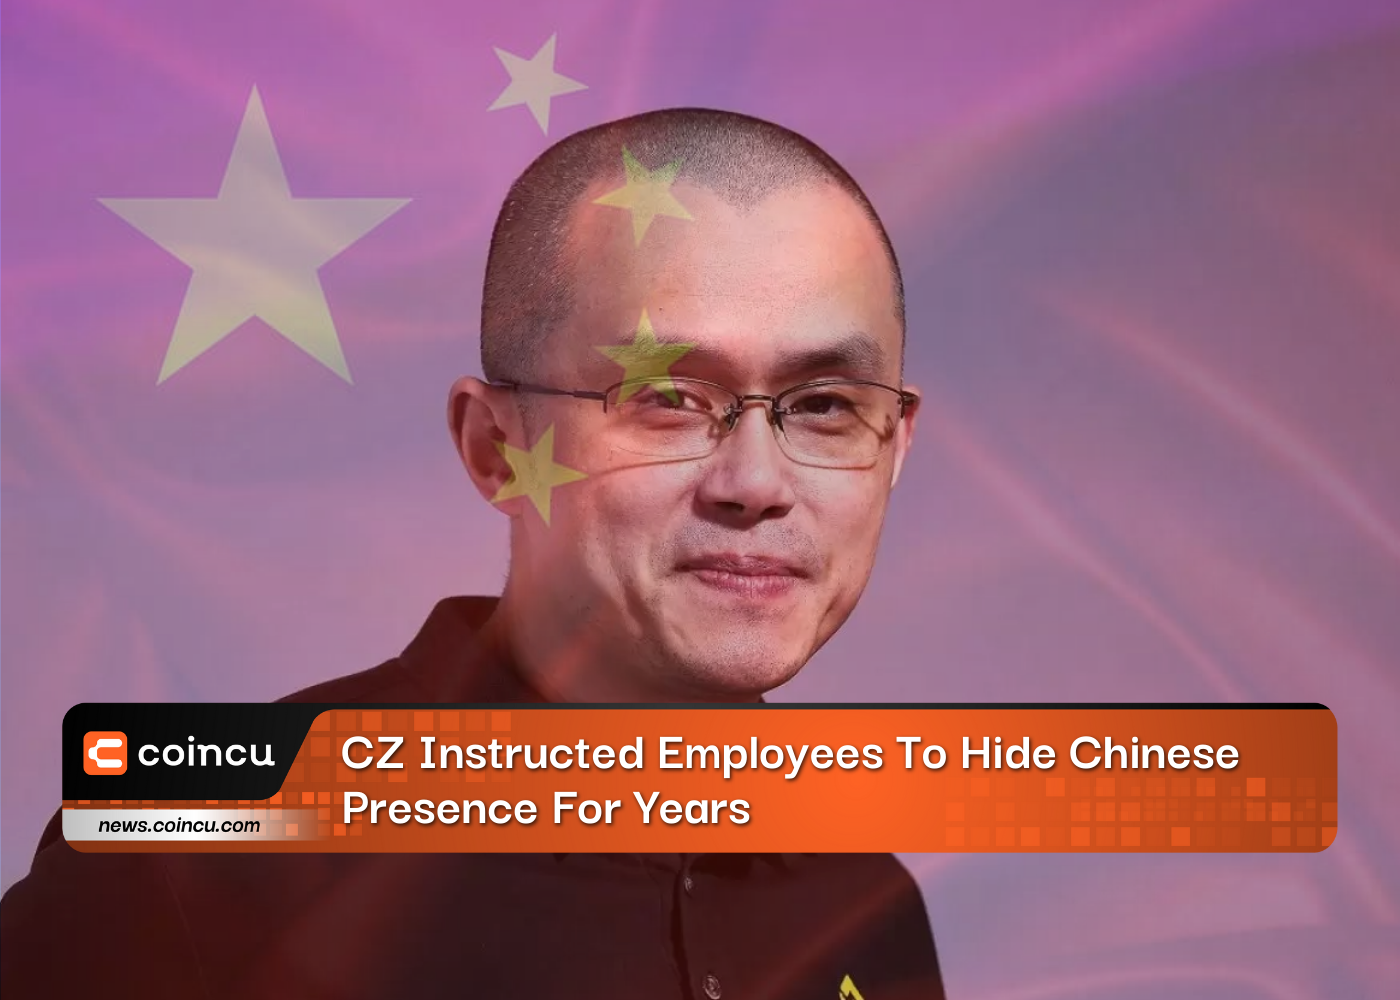 CZ wies seine Mitarbeiter jahrelang an, die chinesische Präsenz zu verbergen